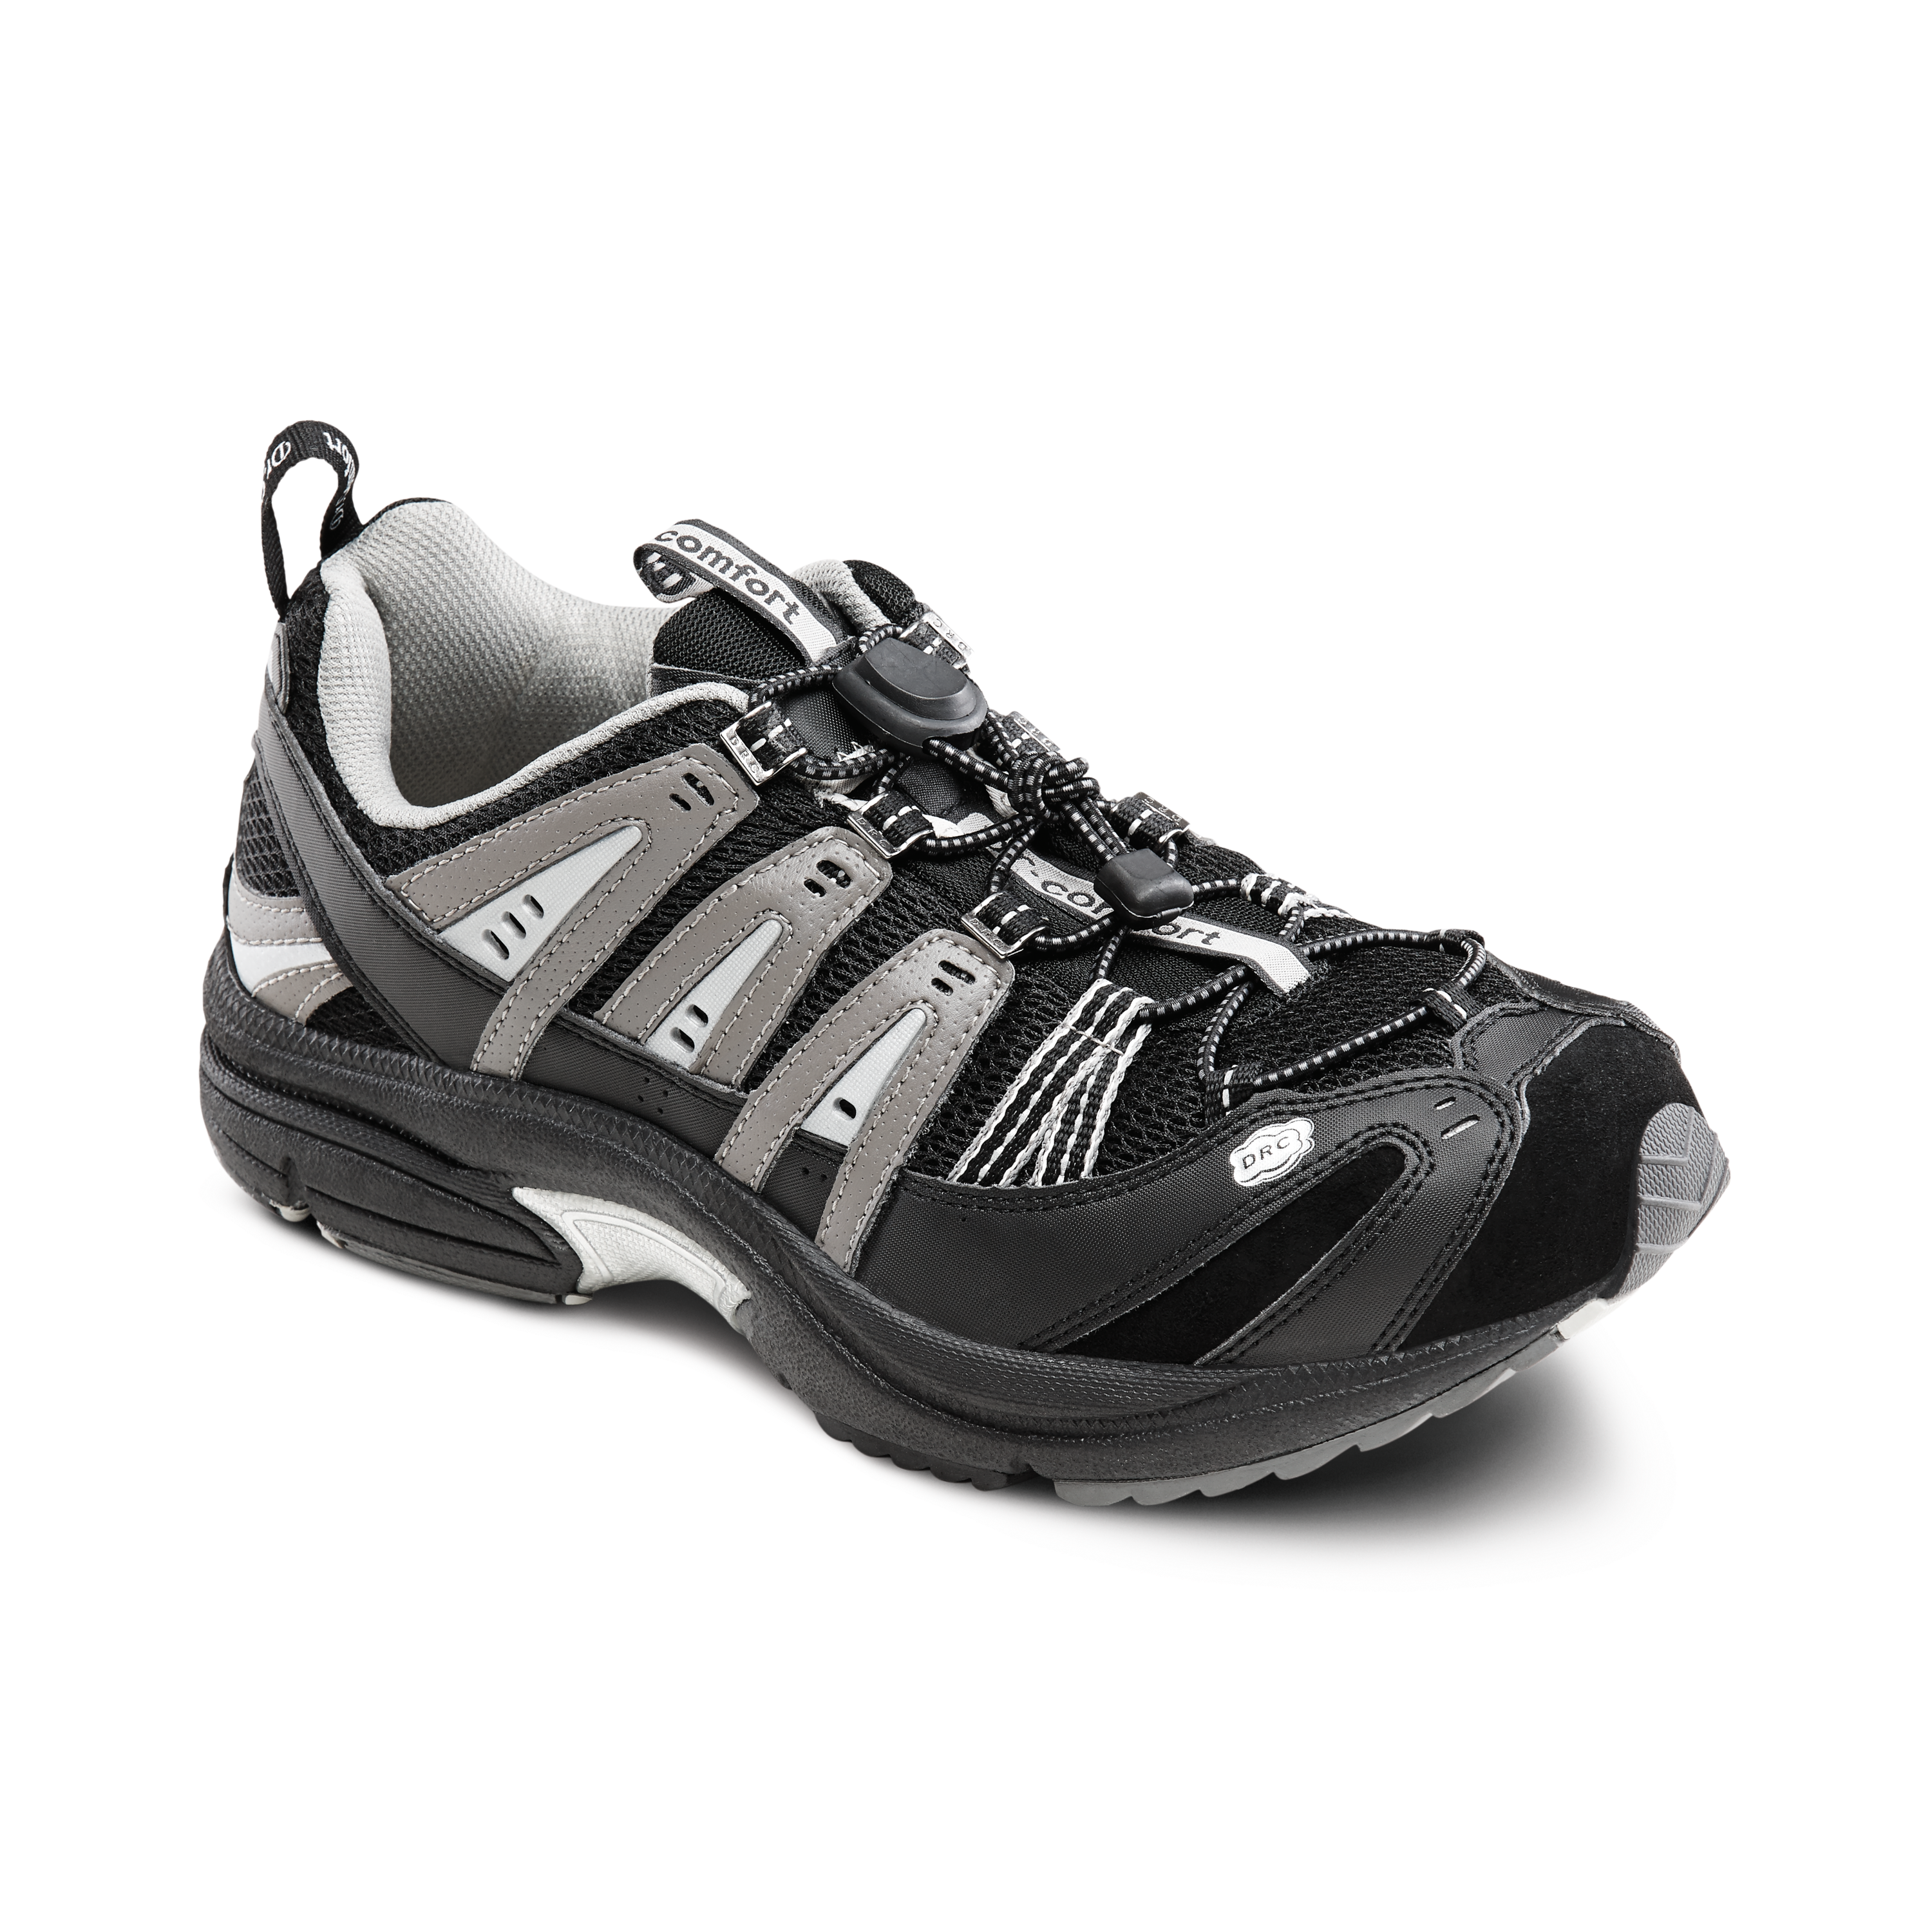 Produktbild DR. COMFORT® Performance grau, Orthopädische Schuhe, Ideal für den aktiven Mann. Leichter und komfortabler Freizeitschuh